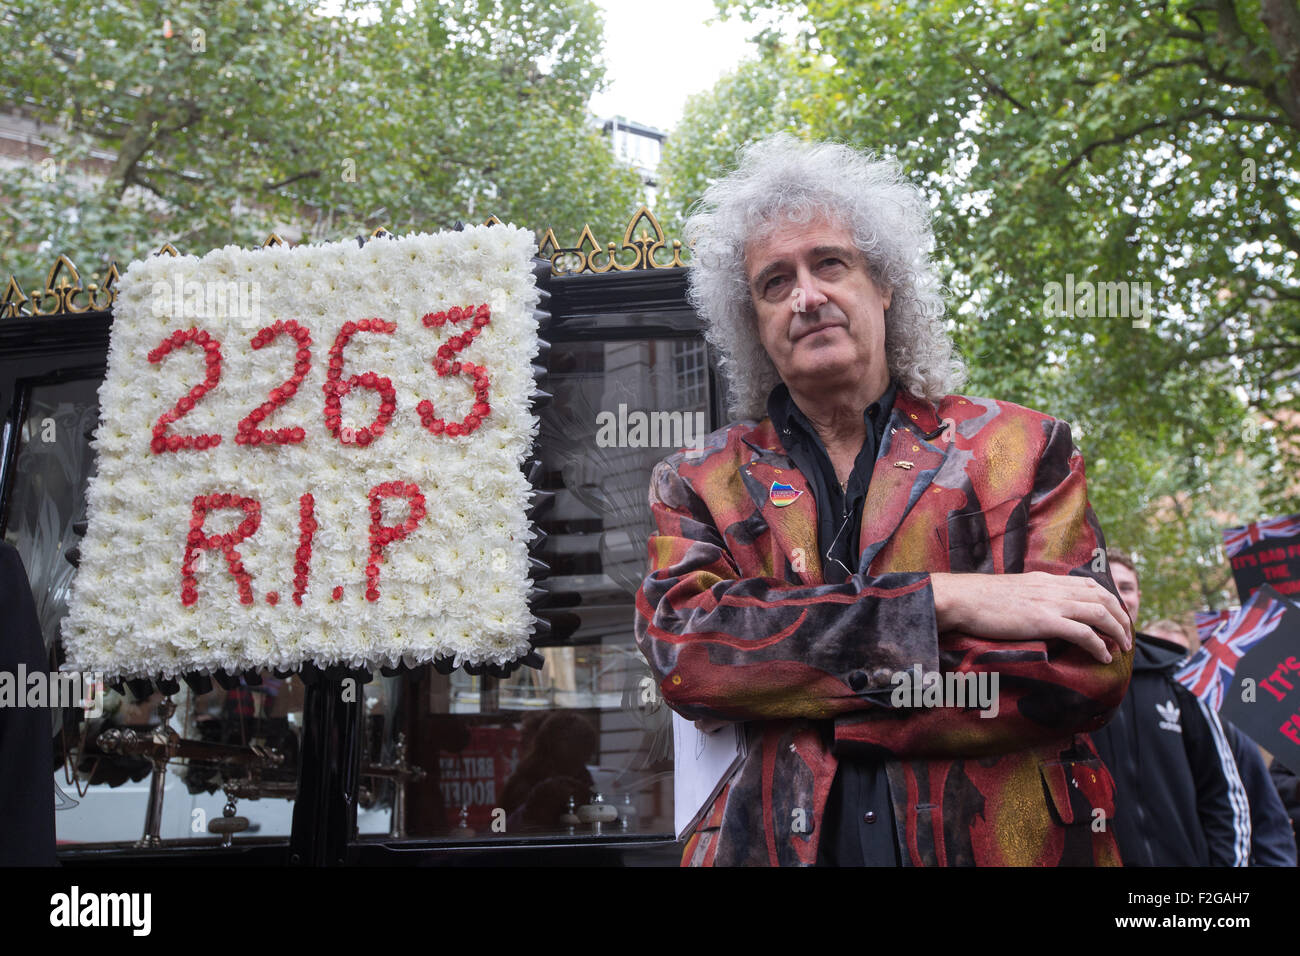 Brian May, guitariste avec le groupe de rock Queen,mène une manifestation contre l'abattage.2263 blaireau blaireaux ont été abattus Banque D'Images